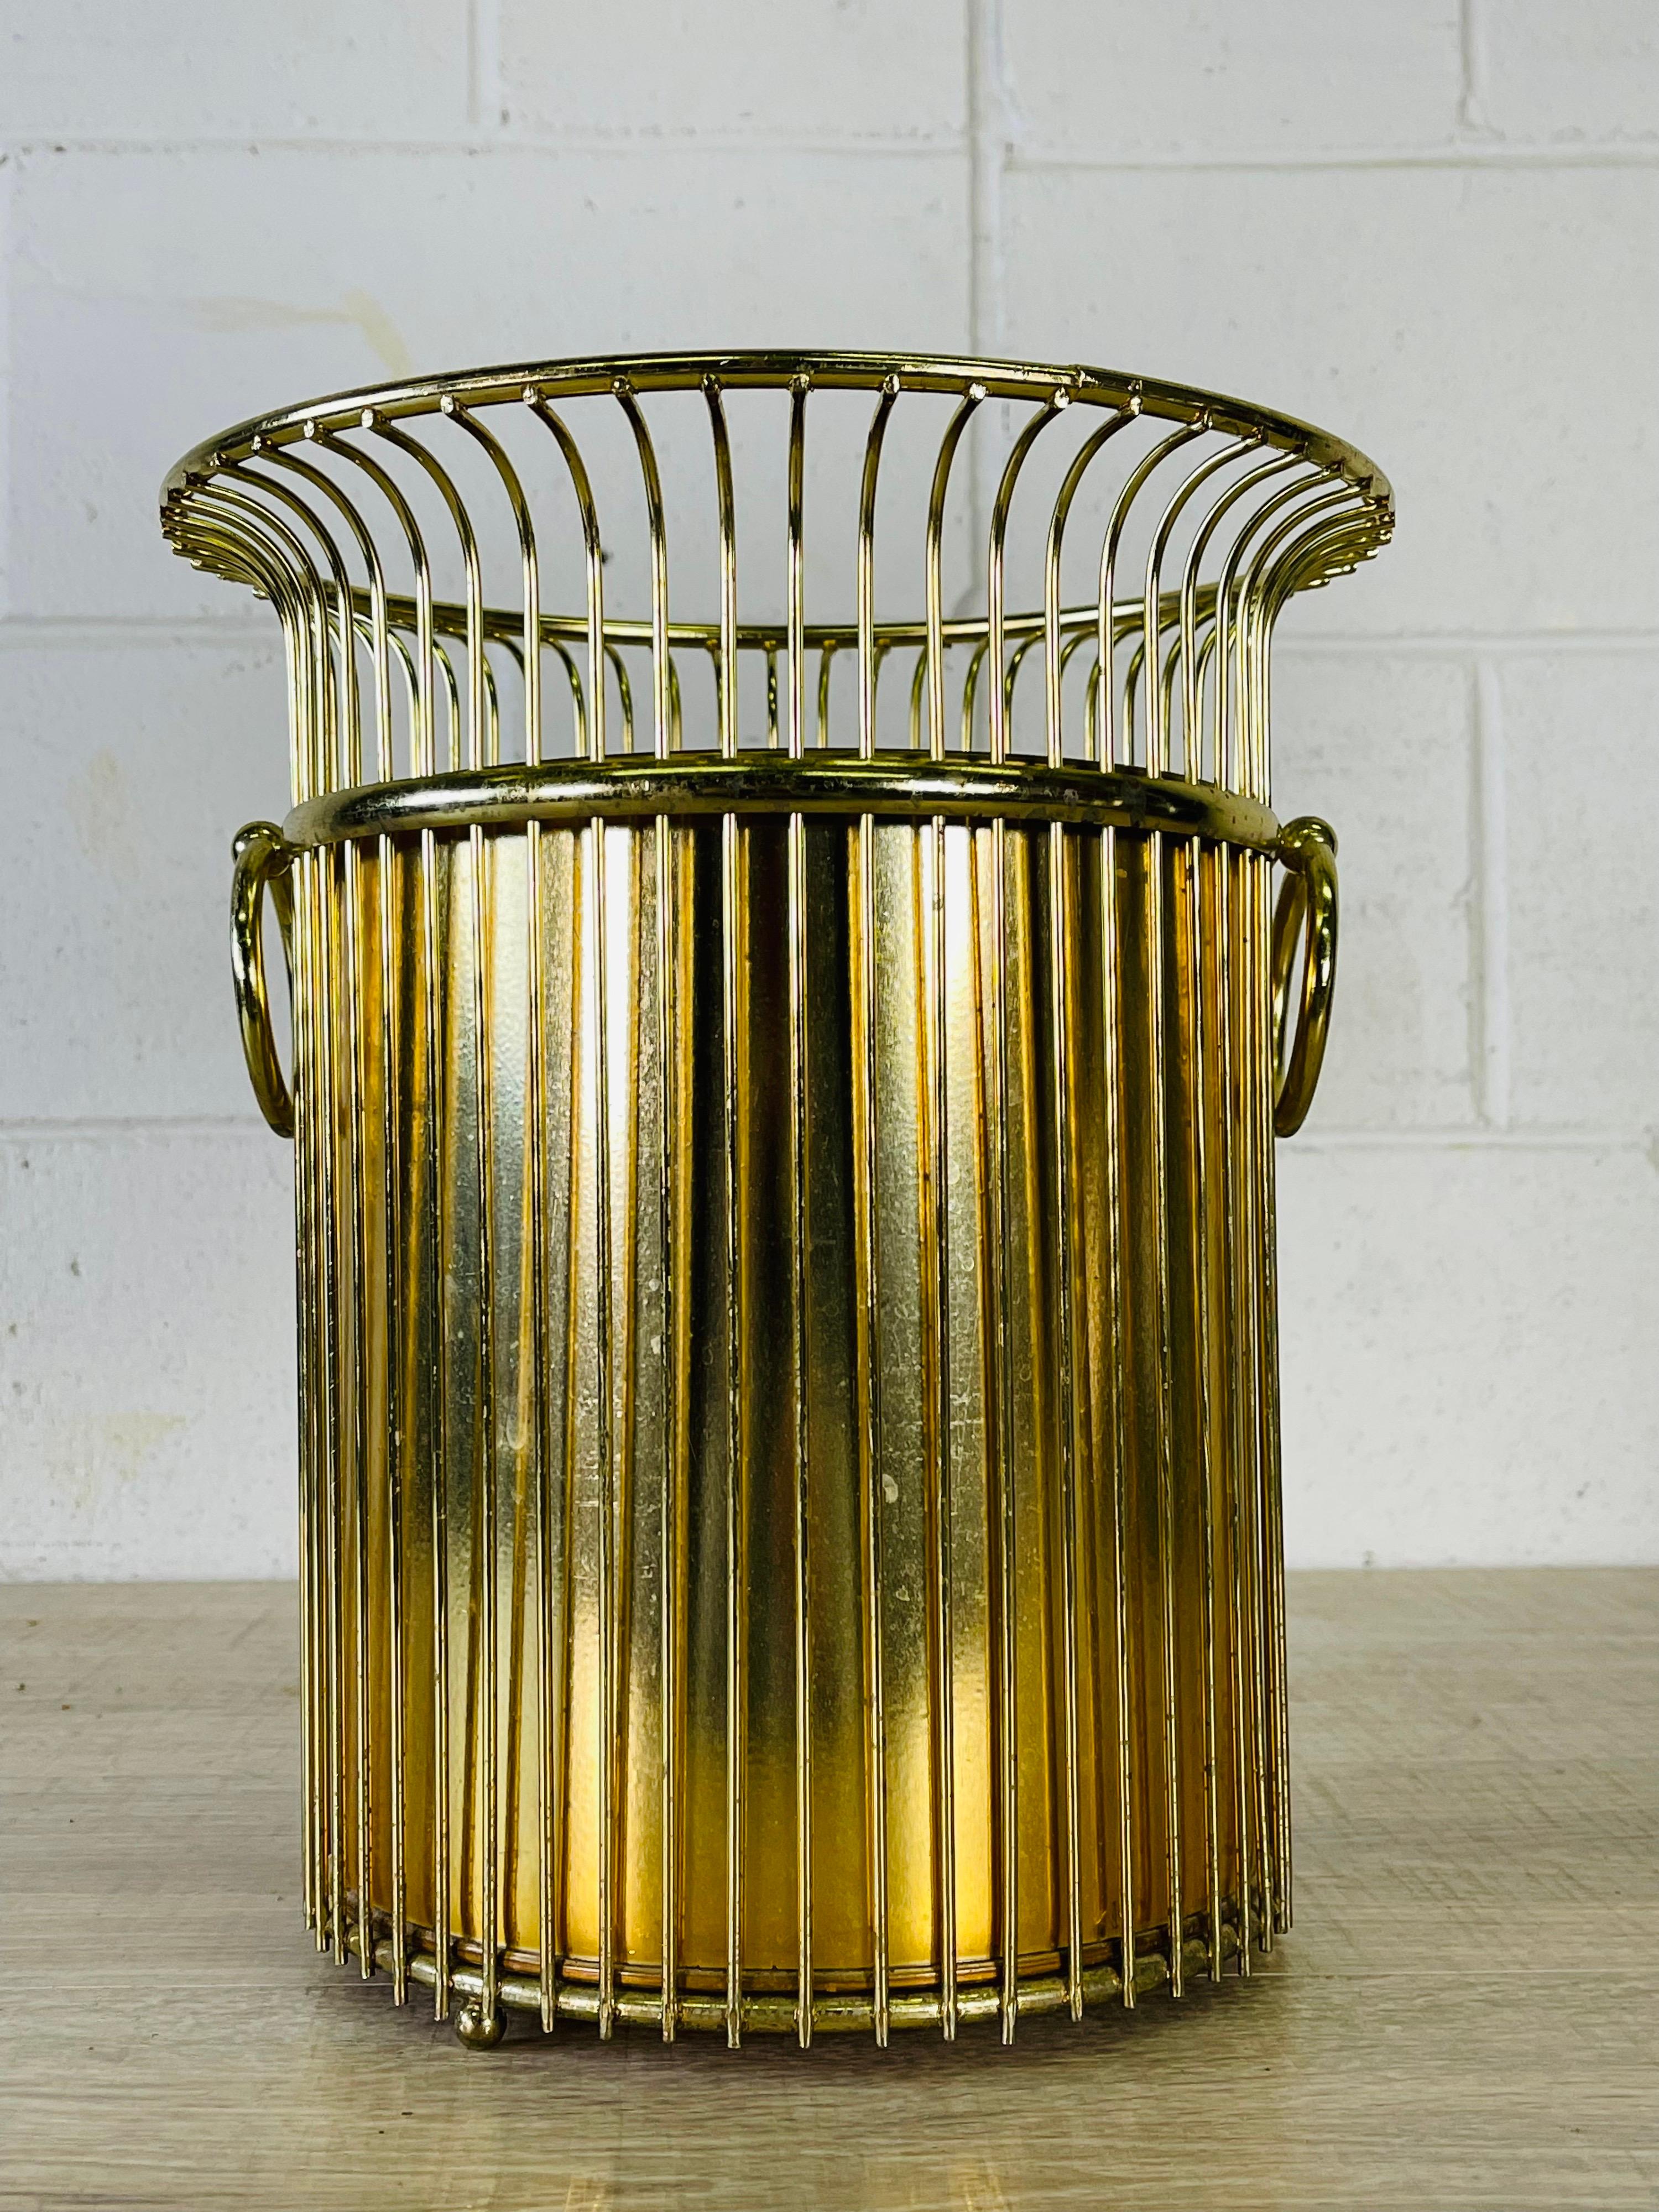 gold wire wastebasket